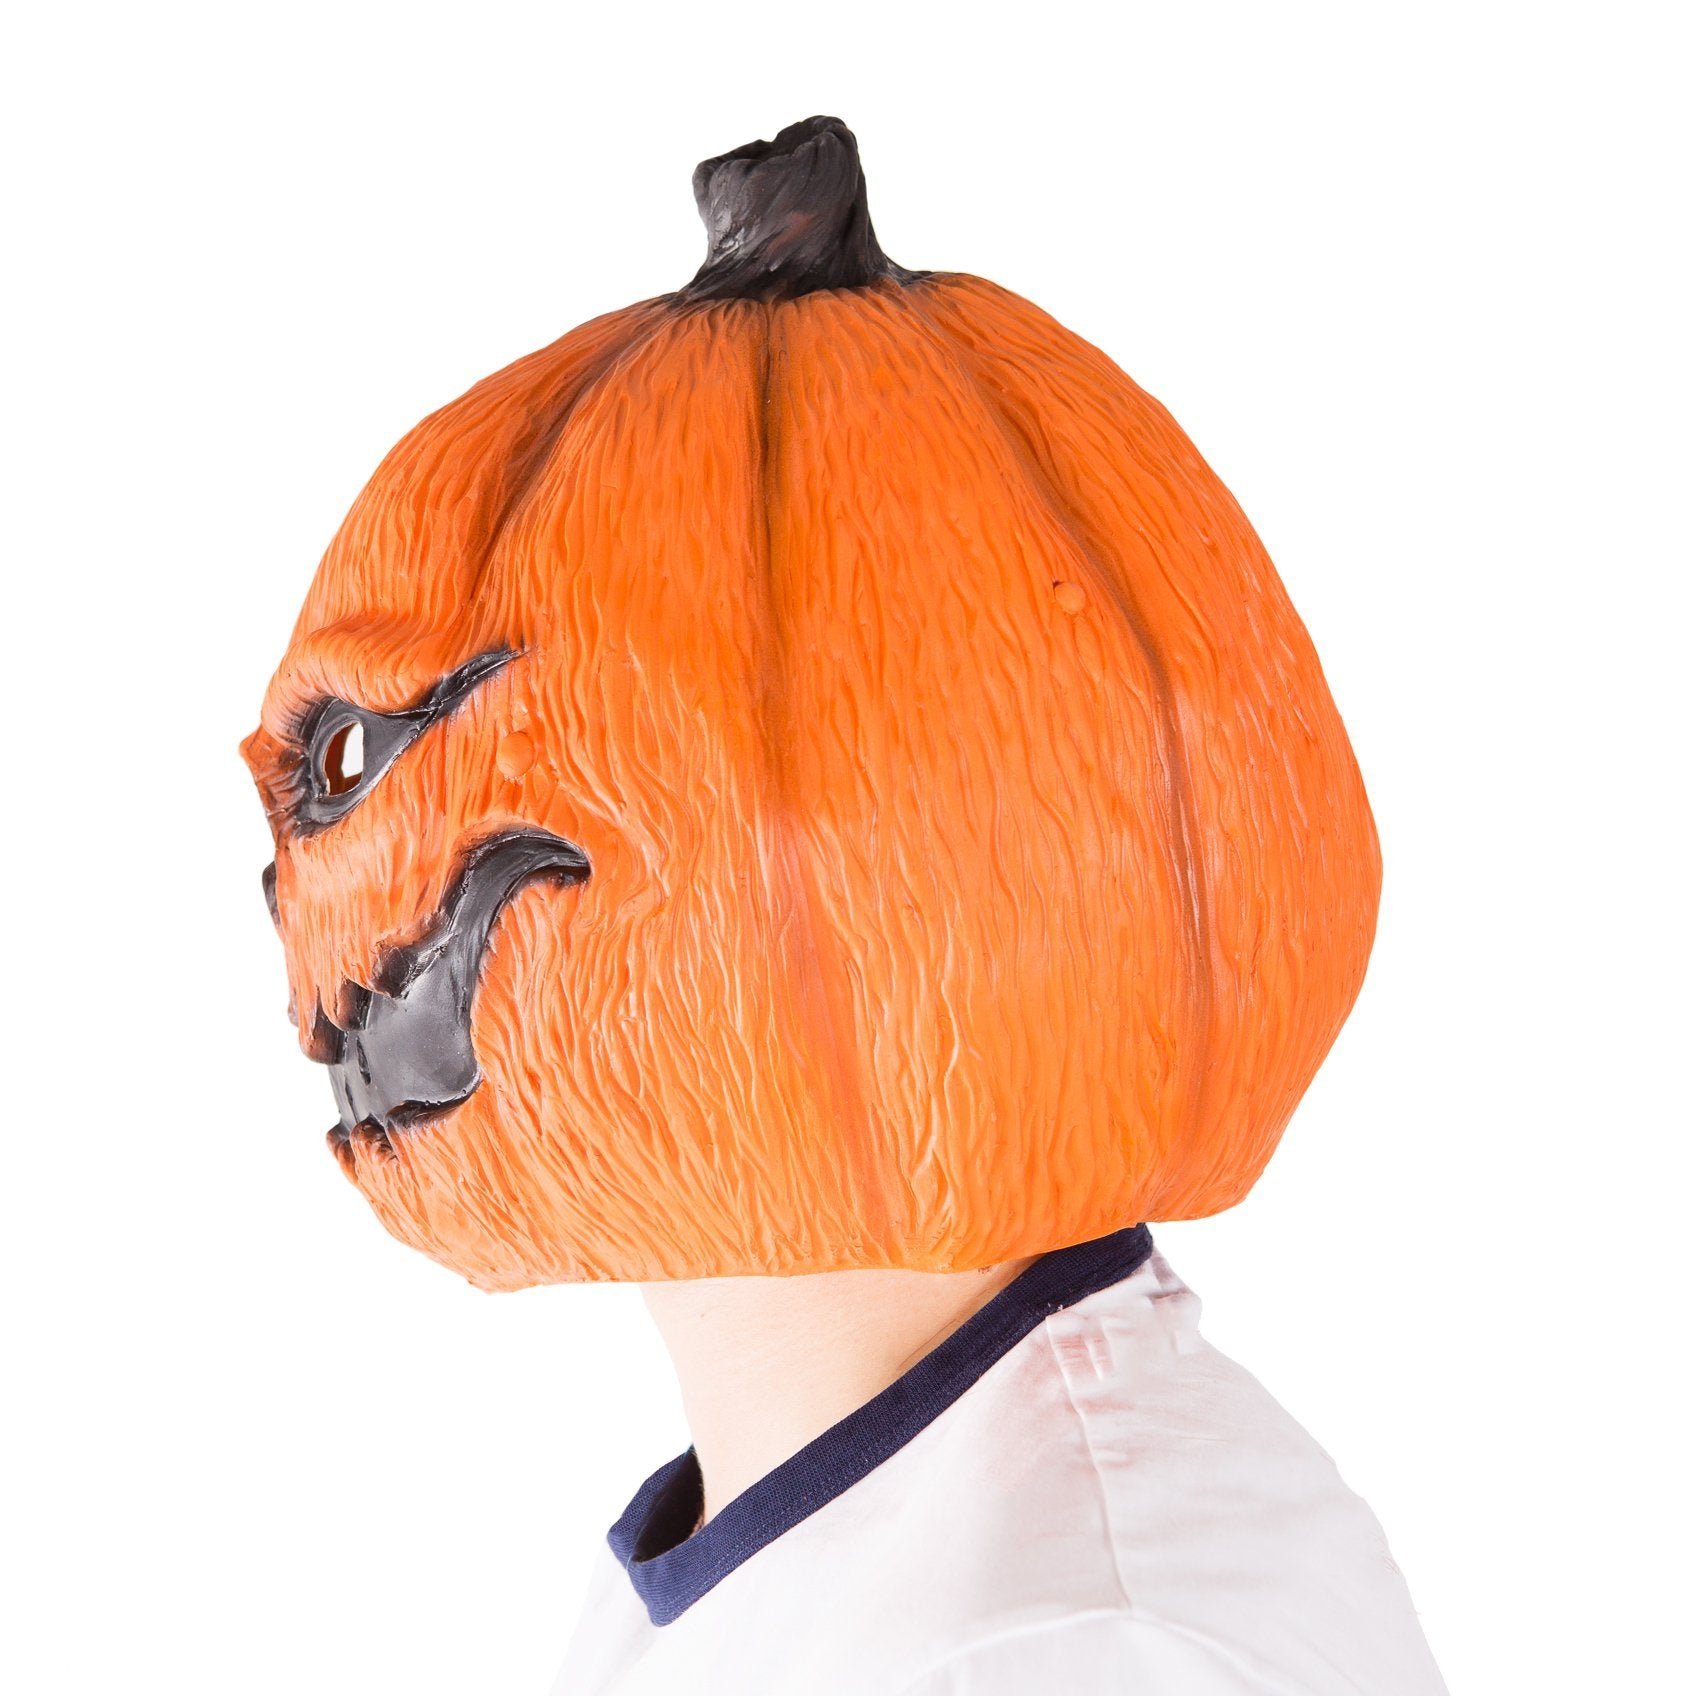 Bodysocks - Latex Pumpkin Mask